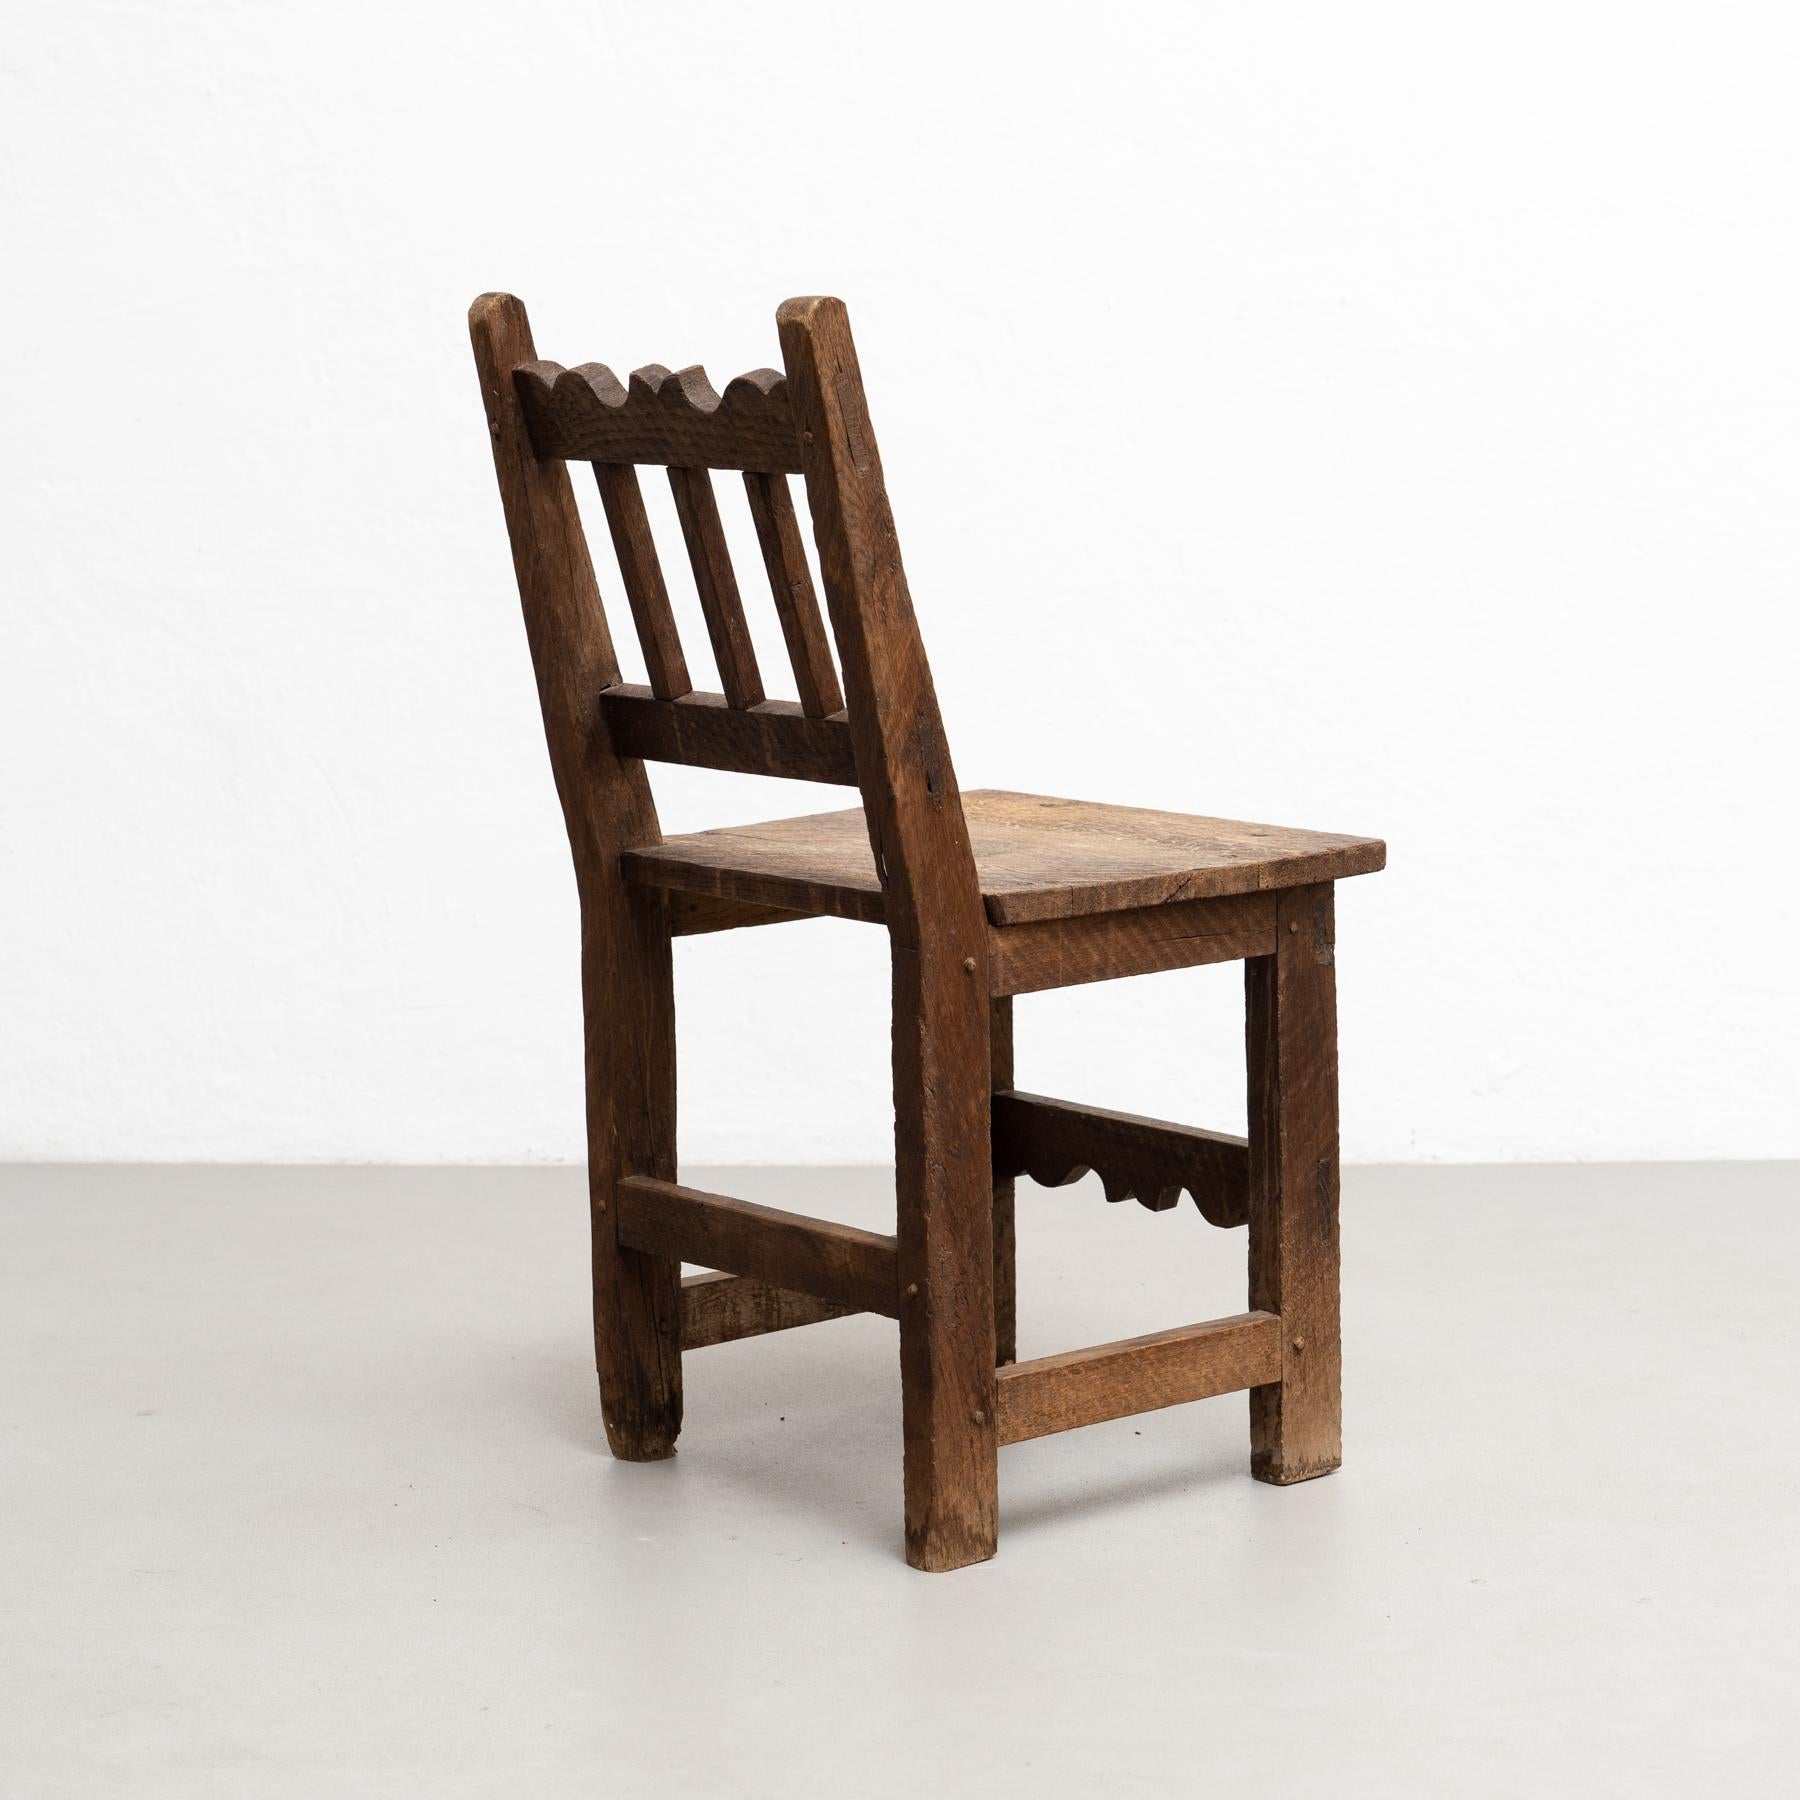 Conjunto de cuatro sillas de madera racionalistas modernas de mediados de siglo, encanto rústico, hacia 1940 Madera